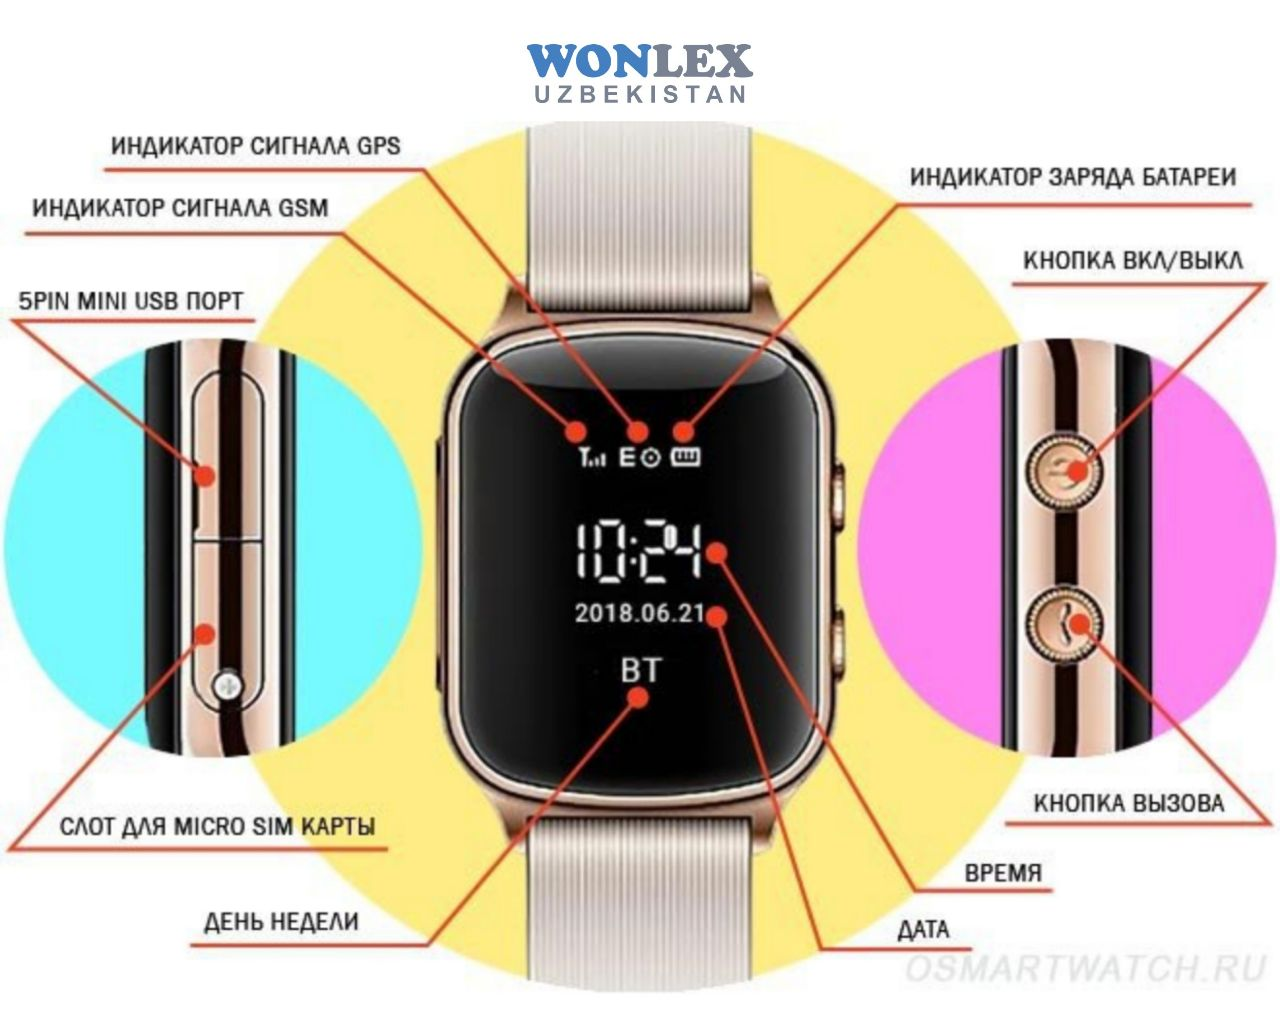 Как настроить часы м. Как включить часы Smart watch. Как настроить Smart watch m7. Смарт часы l800. Как включить часы Smart watch 7.